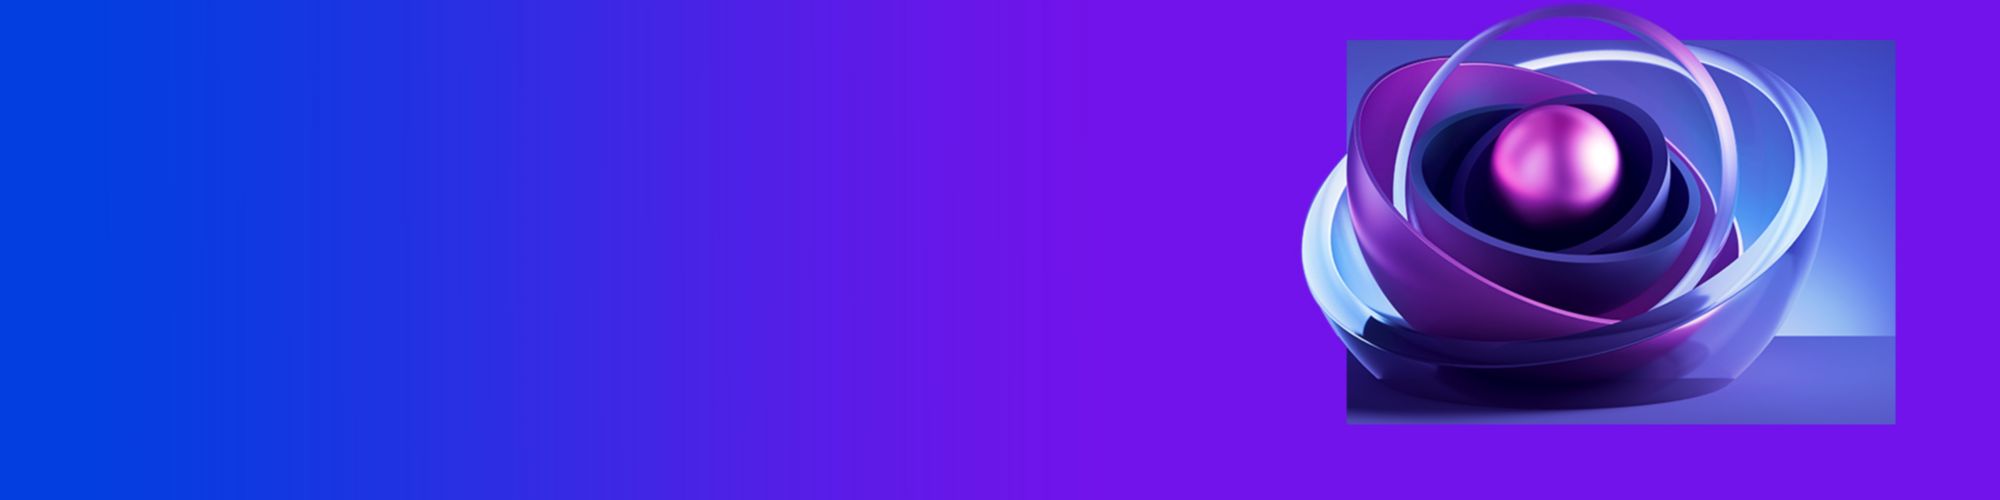 purple blue 3d banner